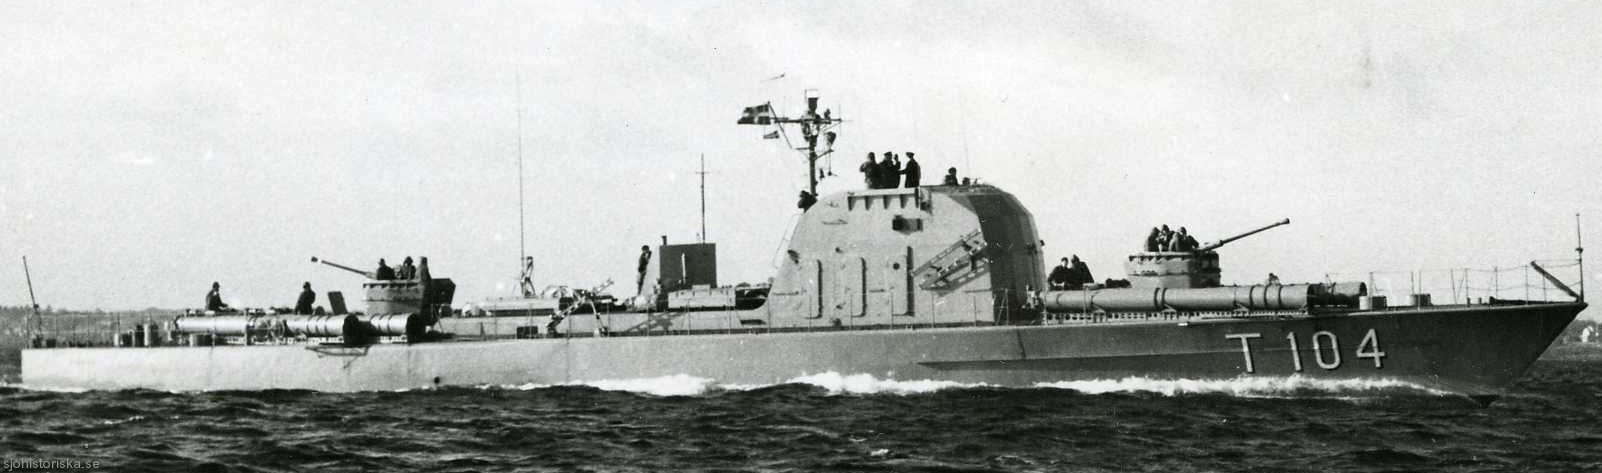 t104 pollux hms hswms plejad class fast attack craft torpedo boat vessel swedish navy svenska marinen 02